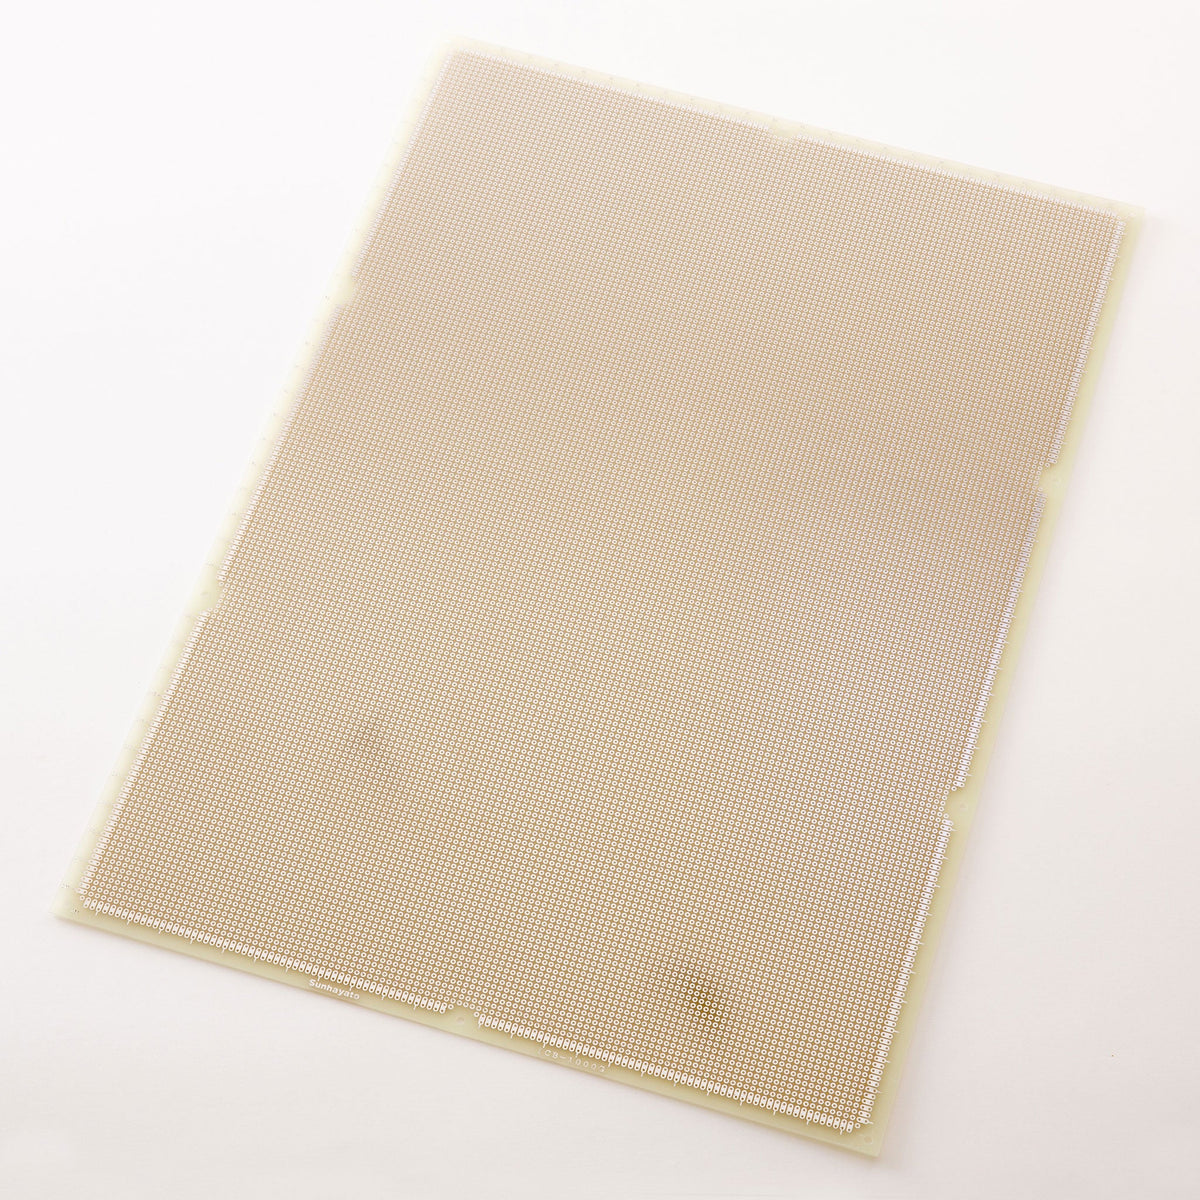 サンハヤト 基板 ICB-1000G 大型ユニバーサル基板 片面・ガラスエポキシ1.6t・460×325mm 《仕上処理》ハンダ 部品面白色シルク印刷  その他DIY、業務、産業用品